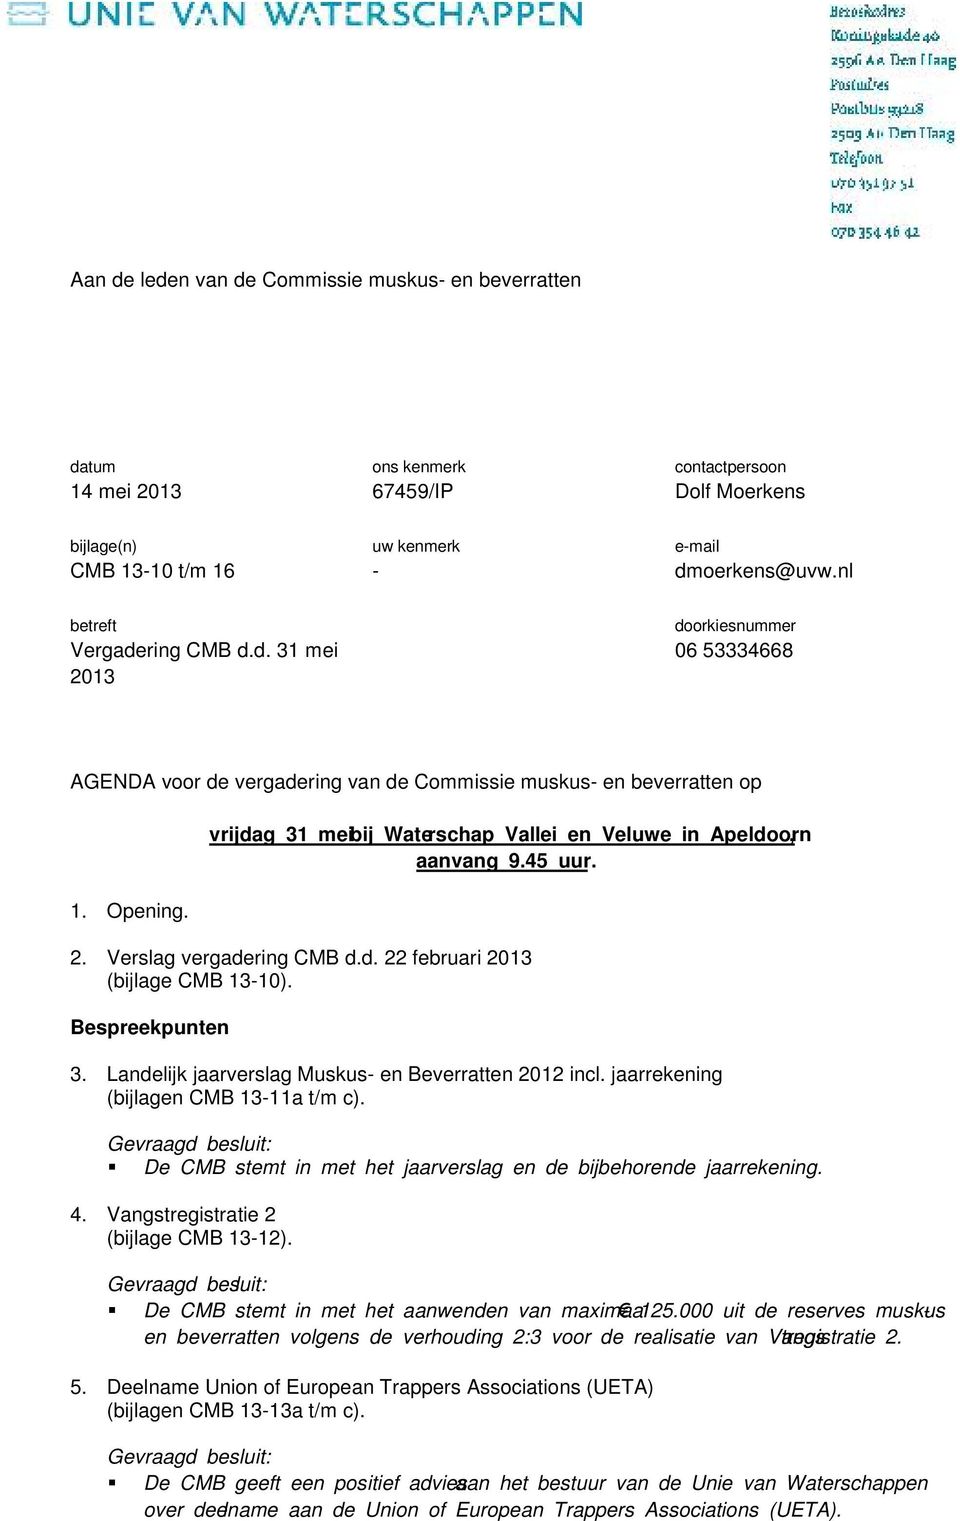 vrijdag 31 mei bij Waterschap Vallei en Veluwe in Apeldoorn, aanvang 9.45 uur. 2. Verslag vergadering CMB d.d. 22 februari 2013 (bijlage CMB 13-10). Bespreekpunten 3.